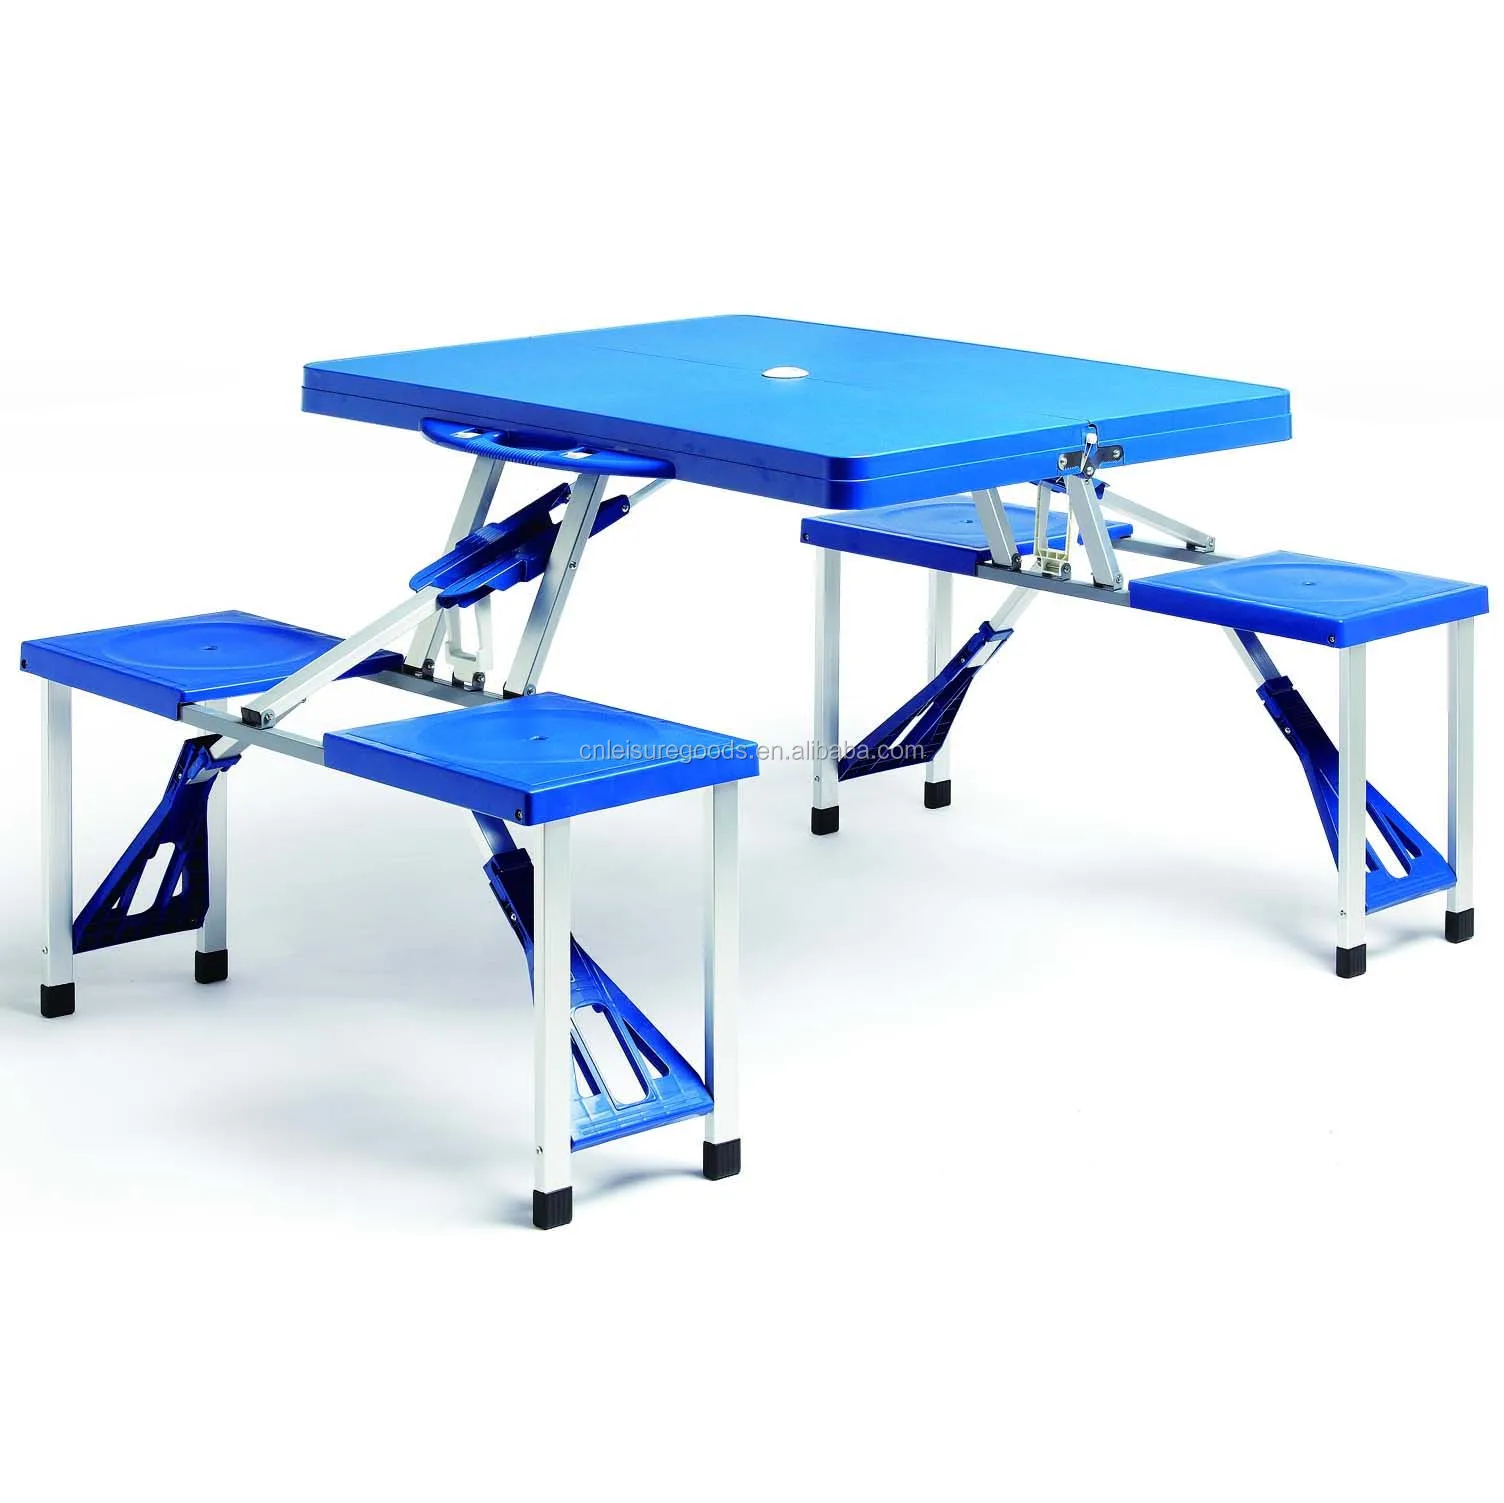 Наборы столов для пикника. Стол складной Picnic Table. Туристический набор: складной стол и 4 табурета. Folding Picnic Table and Stools.. Стол для пикника Folding Table серебристый (258477). Стол для кемпинга Deuba.